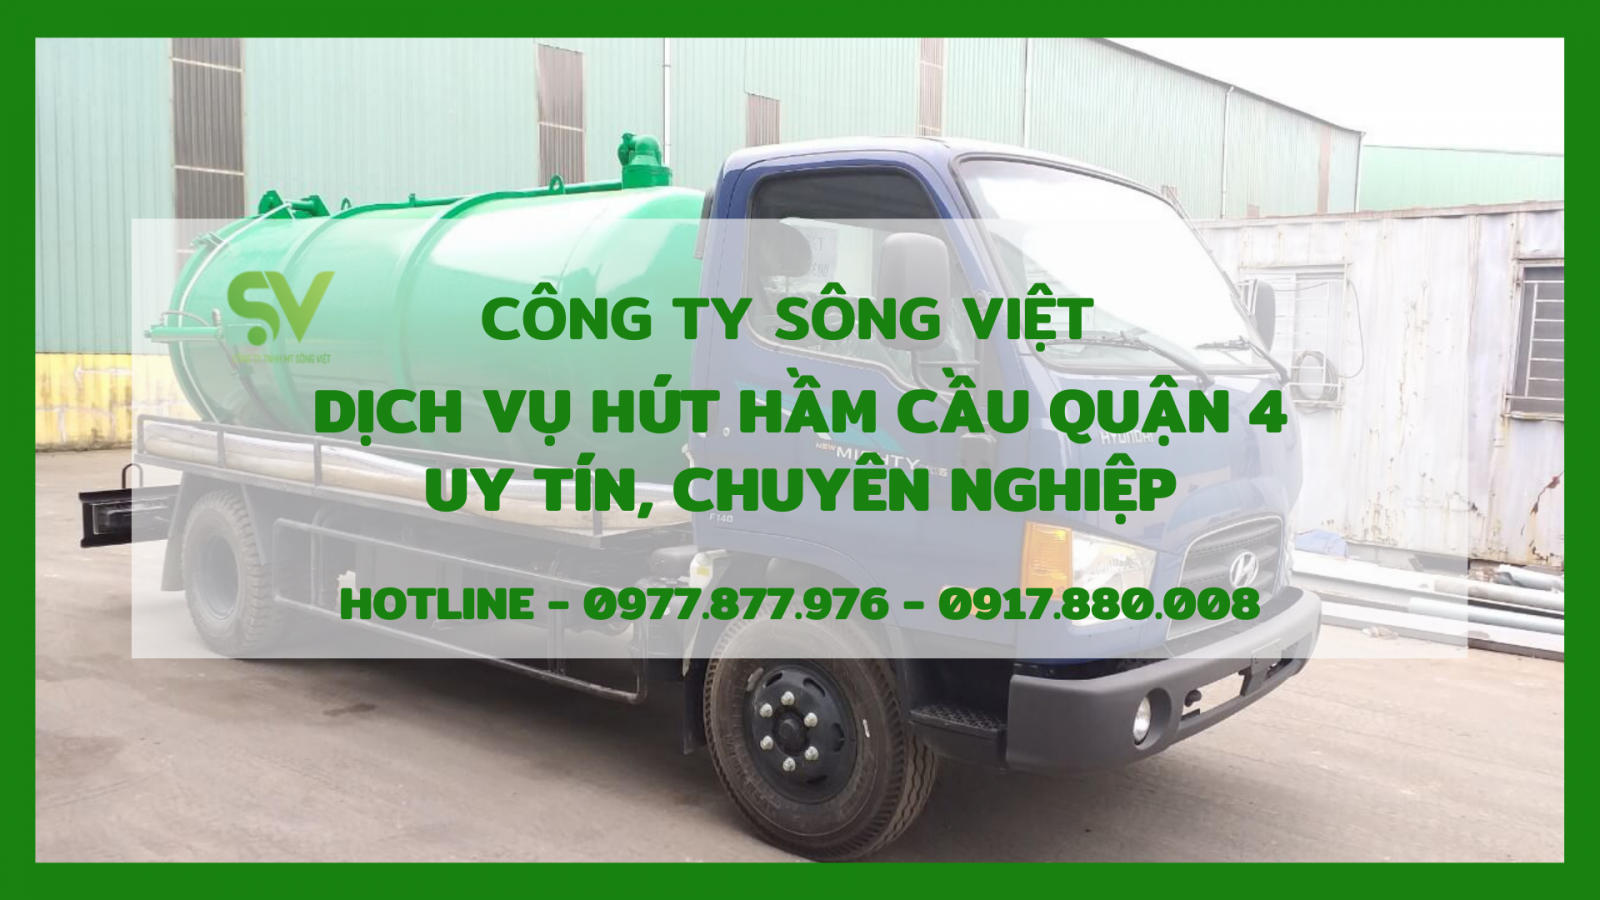 Dịch vụ hút hầm cầu quận 4 Sông Việt - Trang thiết bị hiện đại